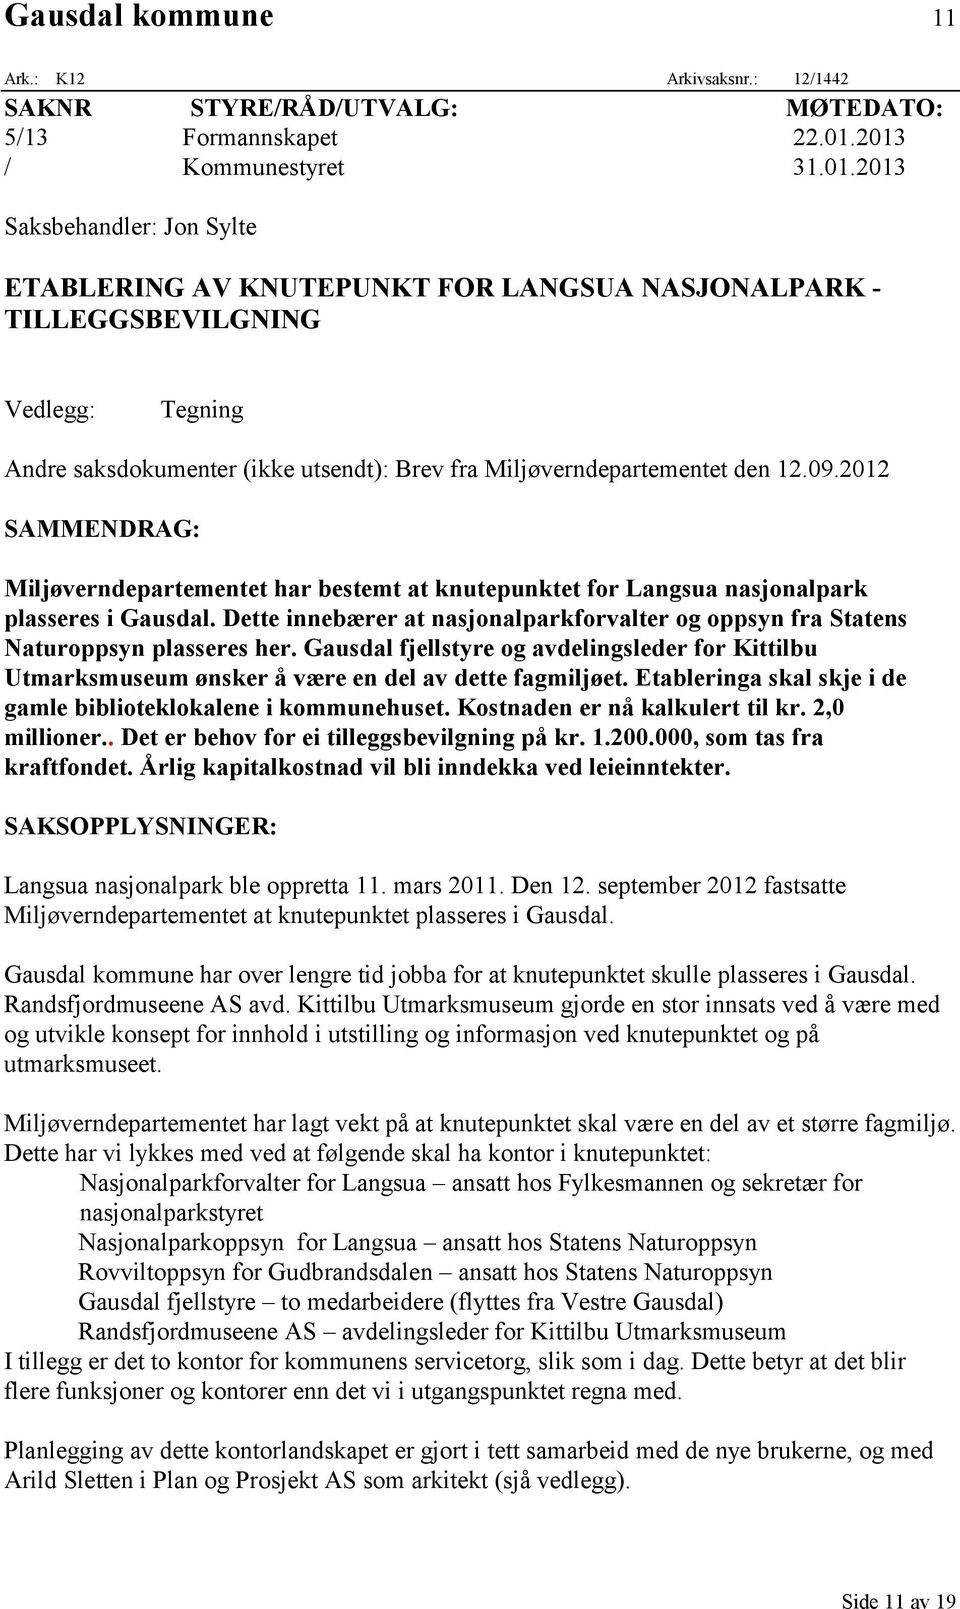 09.2012 SAMMENDRAG: Miljøverndepartementet har bestemt at knutepunktet for Langsua nasjonalpark plasseres i Gausdal.